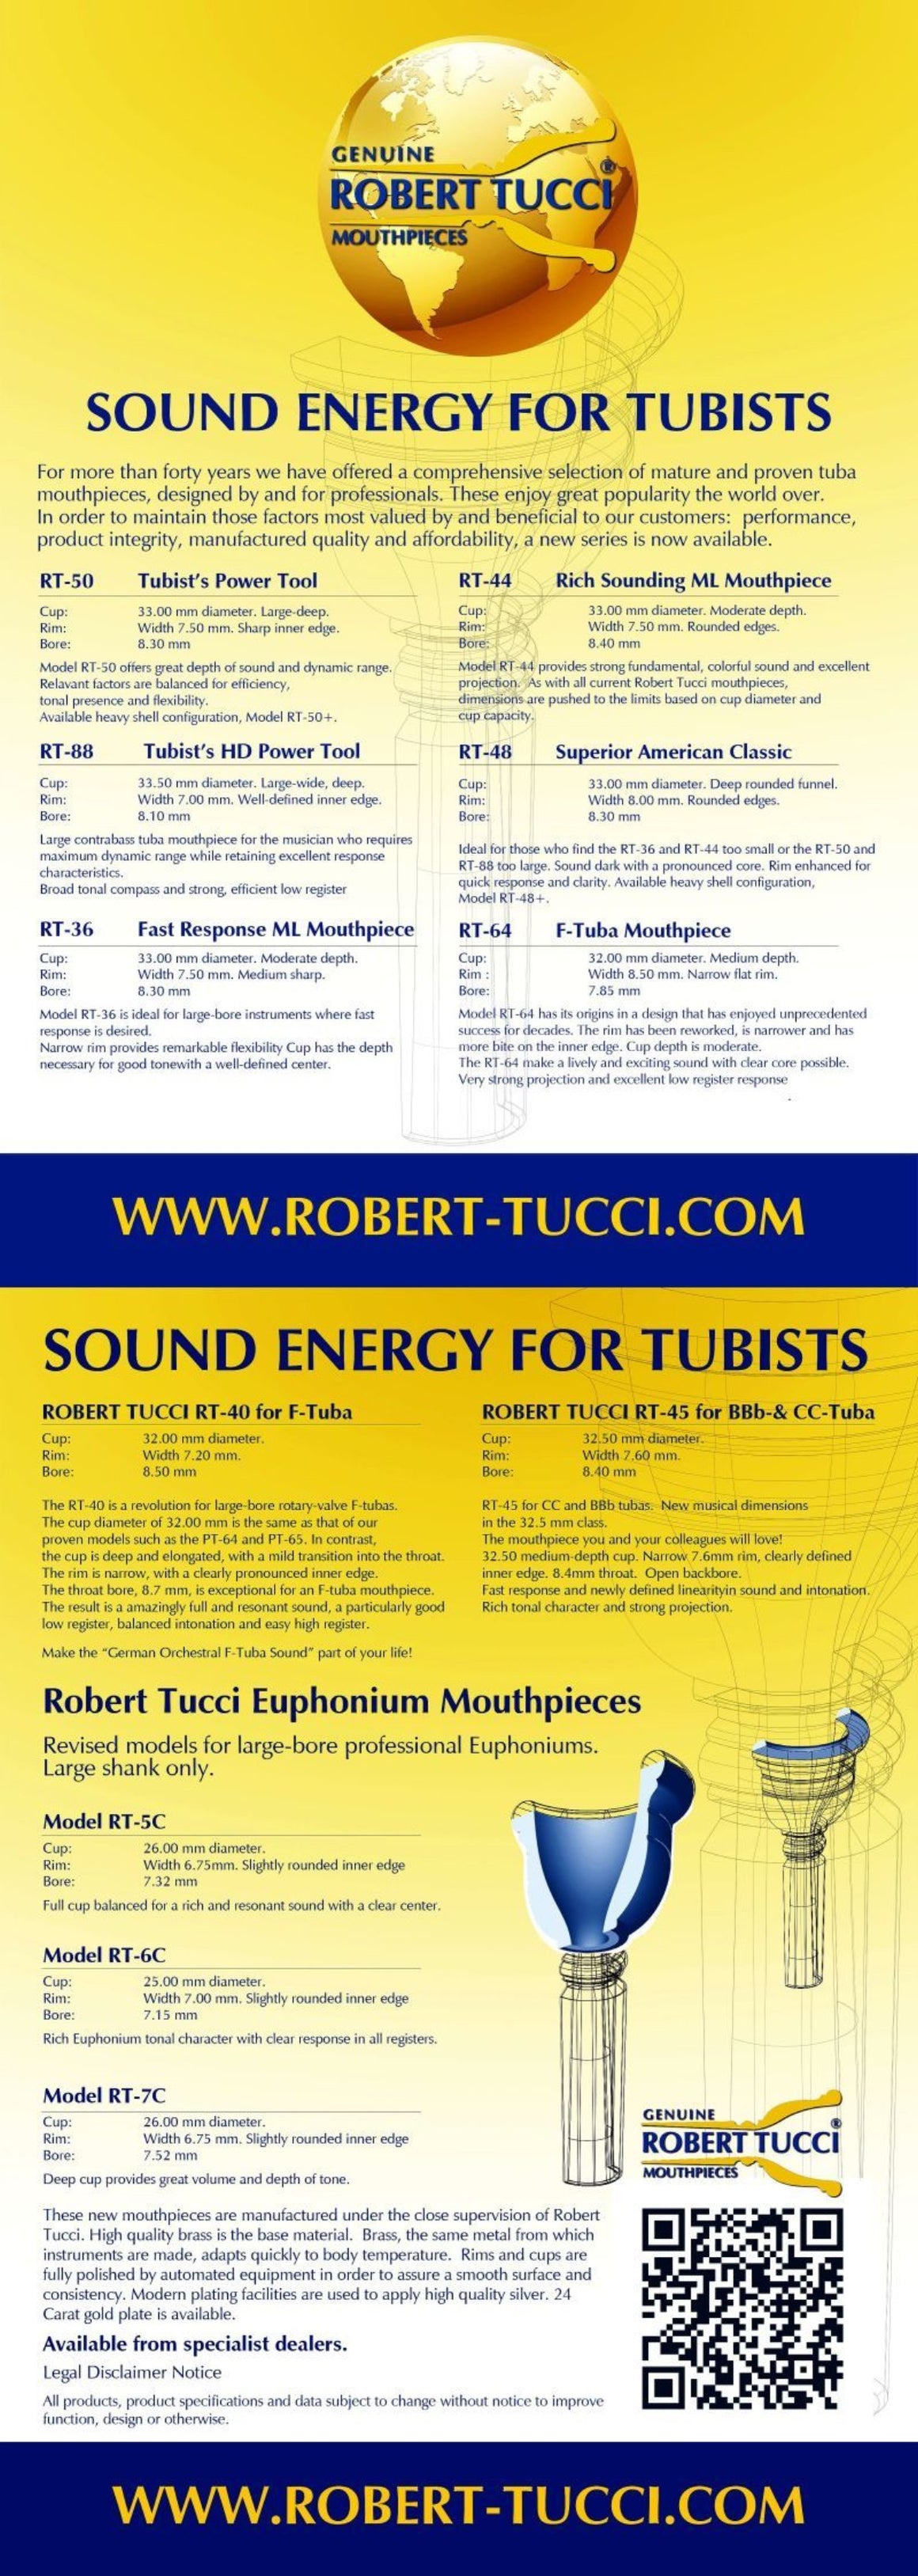 Robert Tucci (Perantucci) Tuba Mouthpieces - H & H Music